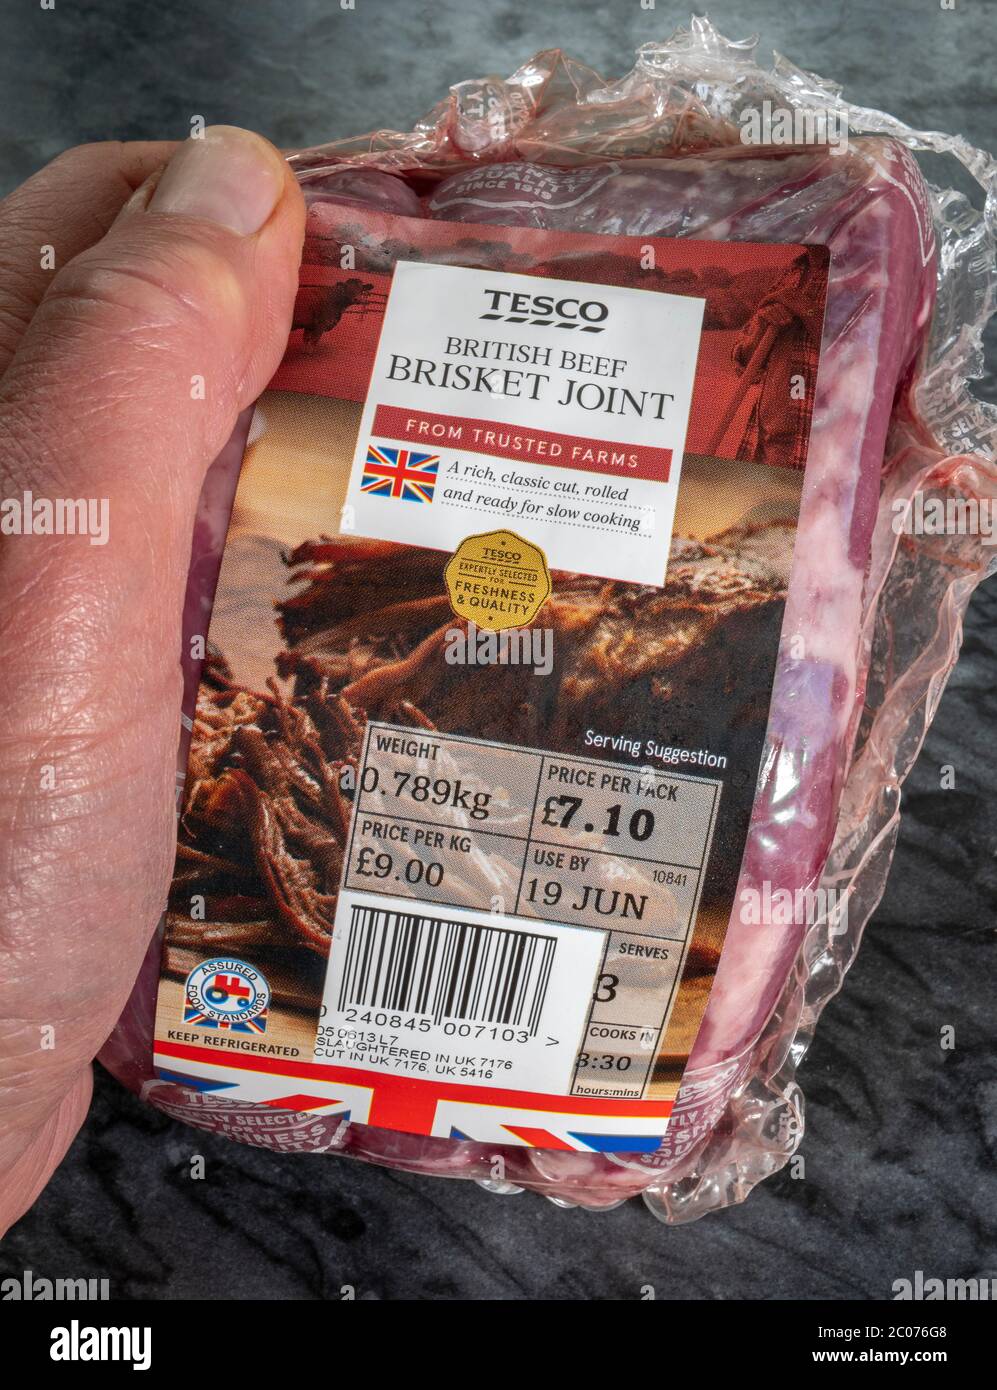 Gros plan de la main d’un homme tenant un joint de poitrine de bœuf britannique Tesco frais, non cuit / cru, dans un emballage en plastique portant une étiquette d’information de supermarché. Banque D'Images